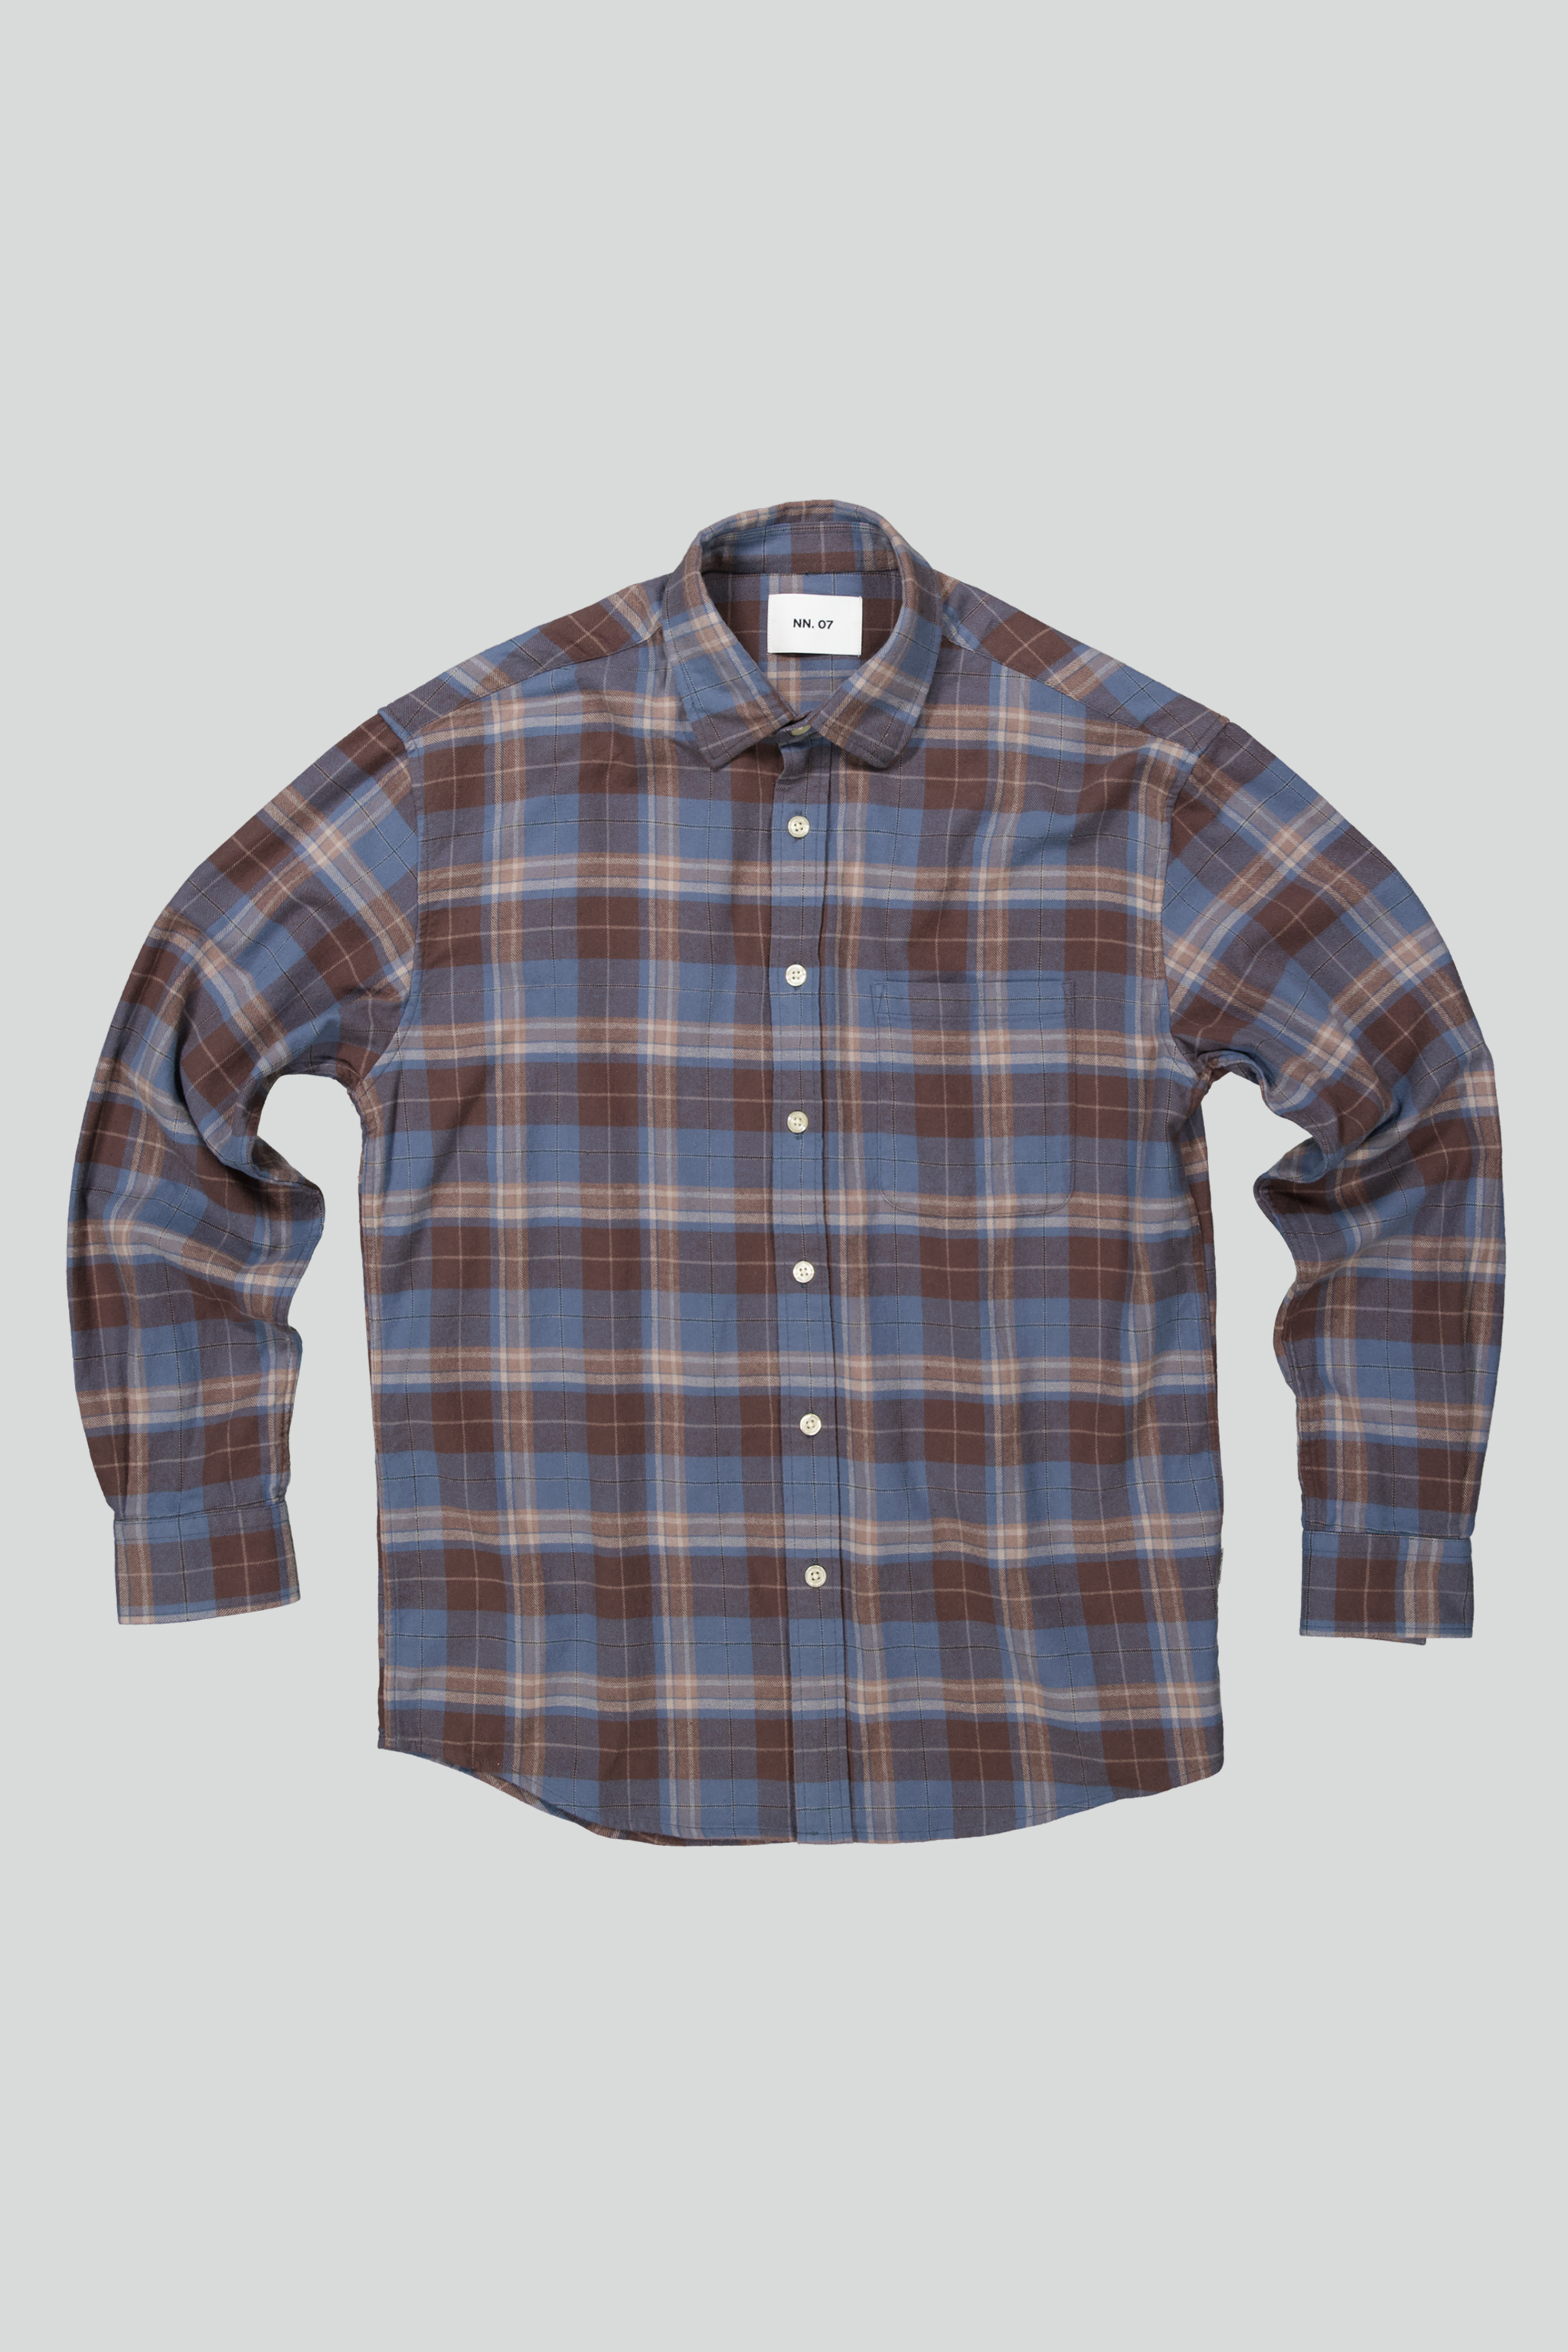 Deon 5465 men's shirt - Brown Check - Buy online at NN.07®